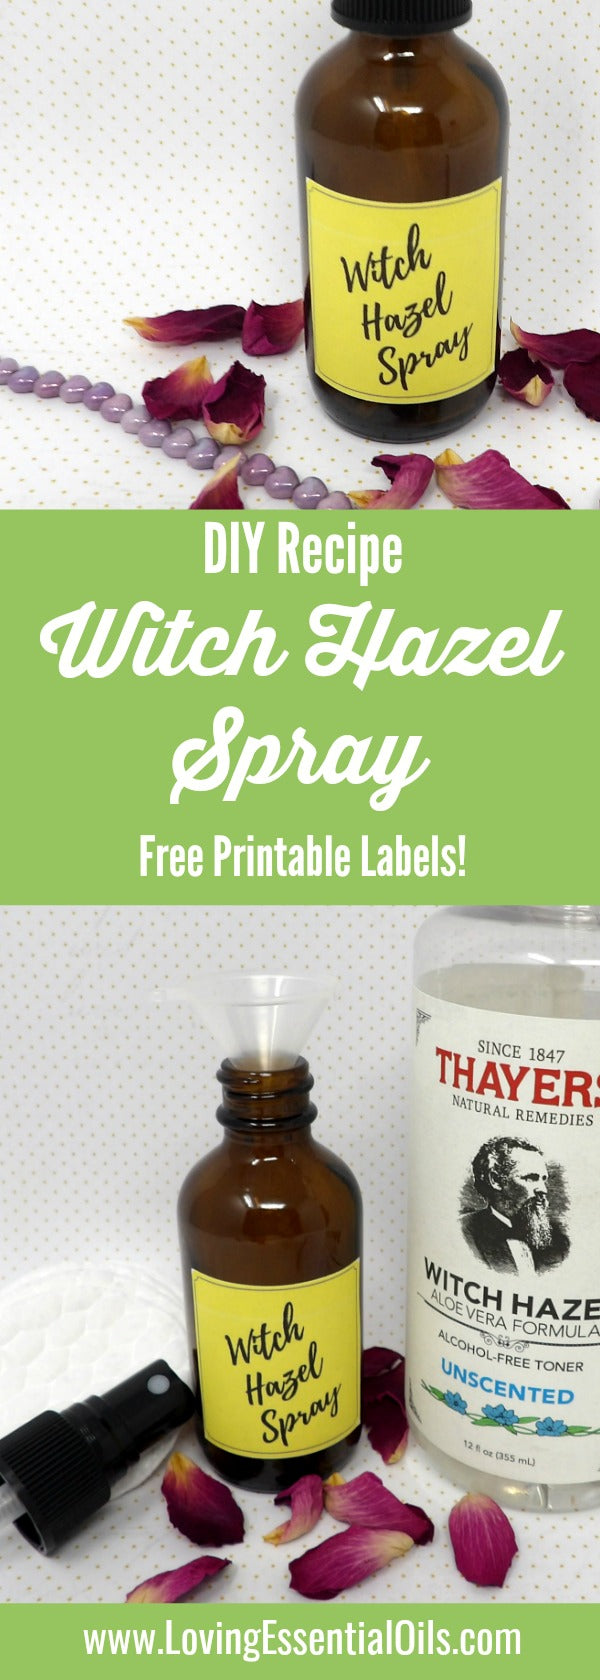 Witch Hazel For Essential Oils -DIY Spray For Healthy Skin by Loving Essential Oils